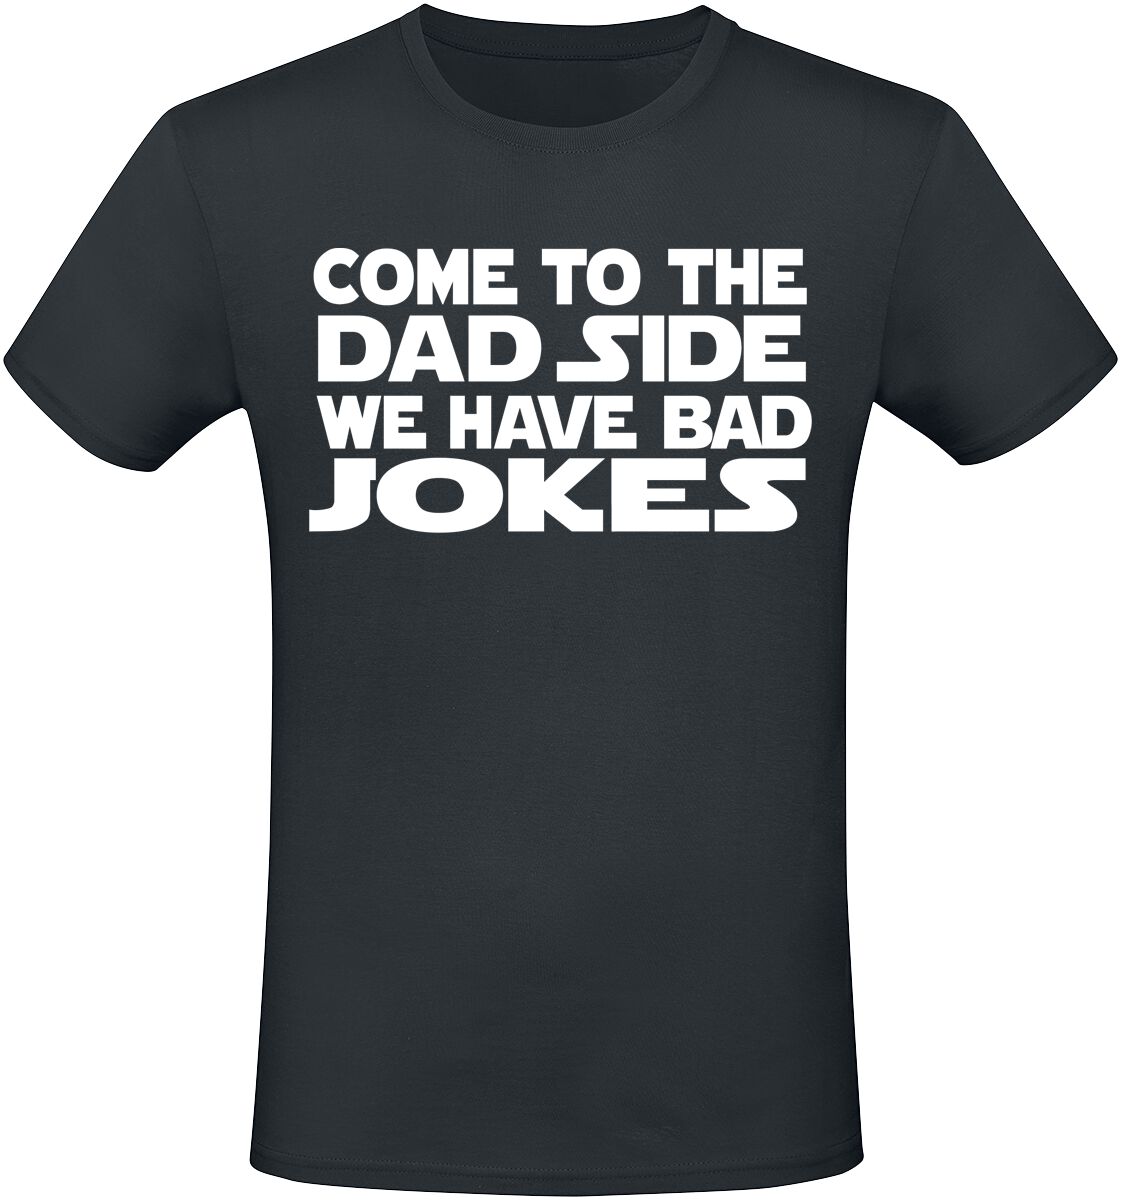 Sprüche T-Shirt - Come To The Dad Side We Have Bad Jokes - M bis 3XL - für Männer - Größe XXL - schwarz